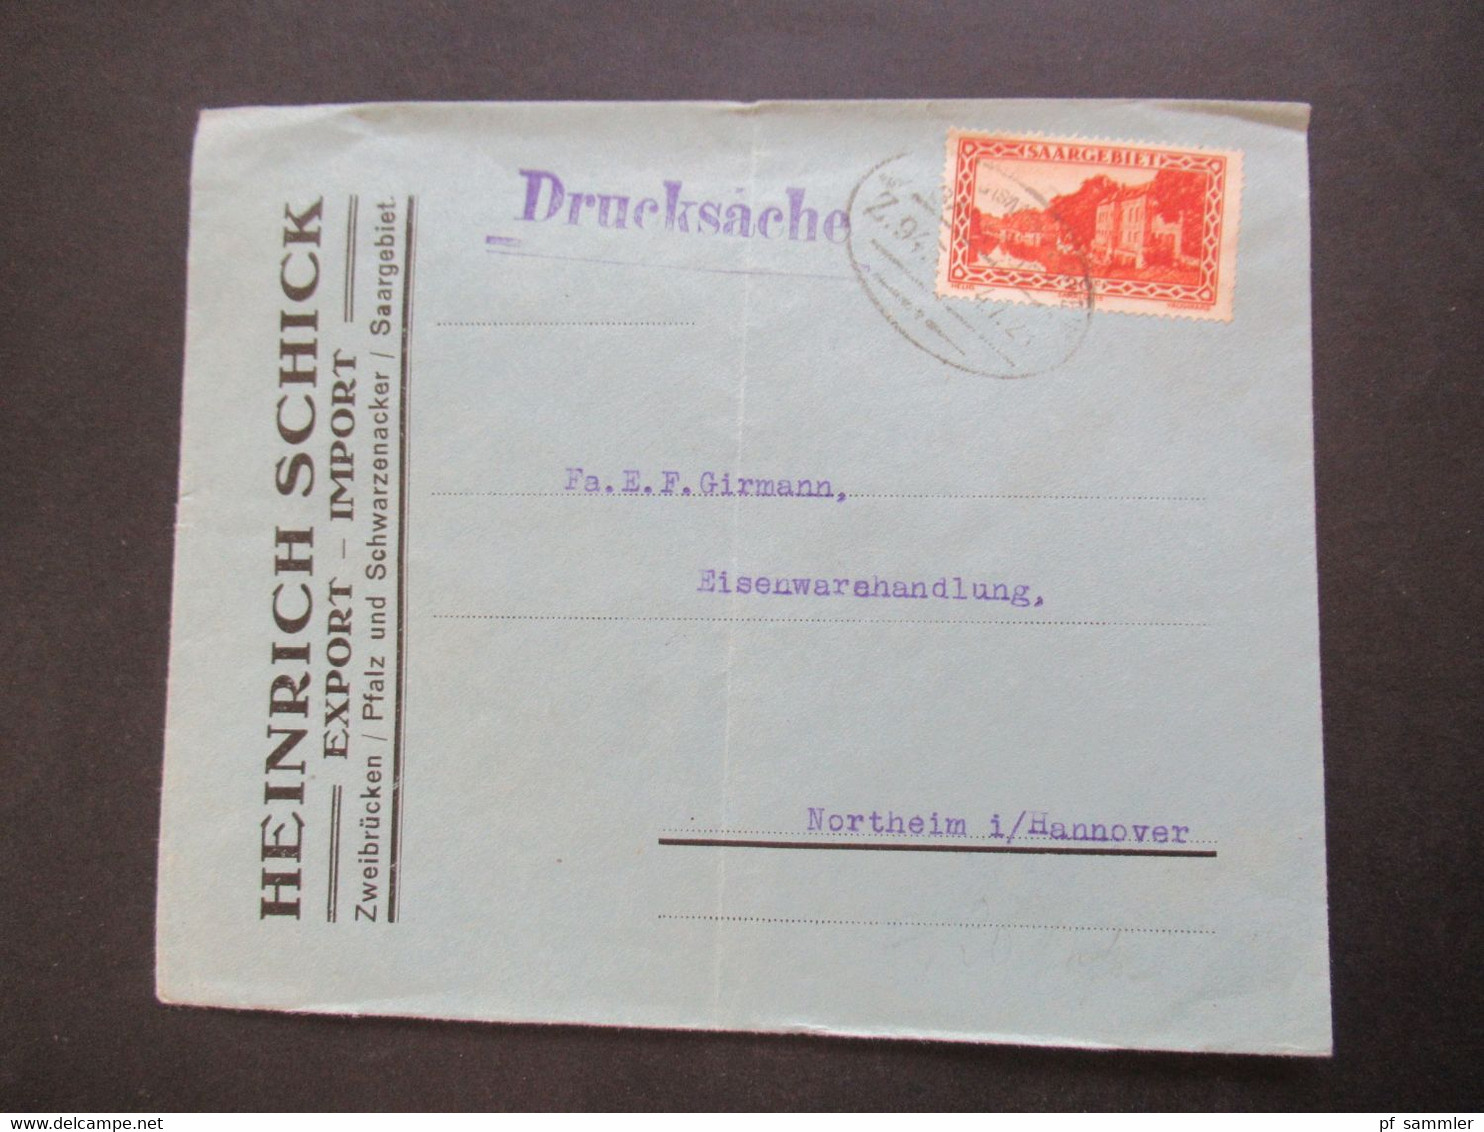 Saargebiet 1923 Drucksache Firmenumschlag Heinrich Schick Export - Import Zweibrücken / Pfalz Und Schwarzenacker - Covers & Documents